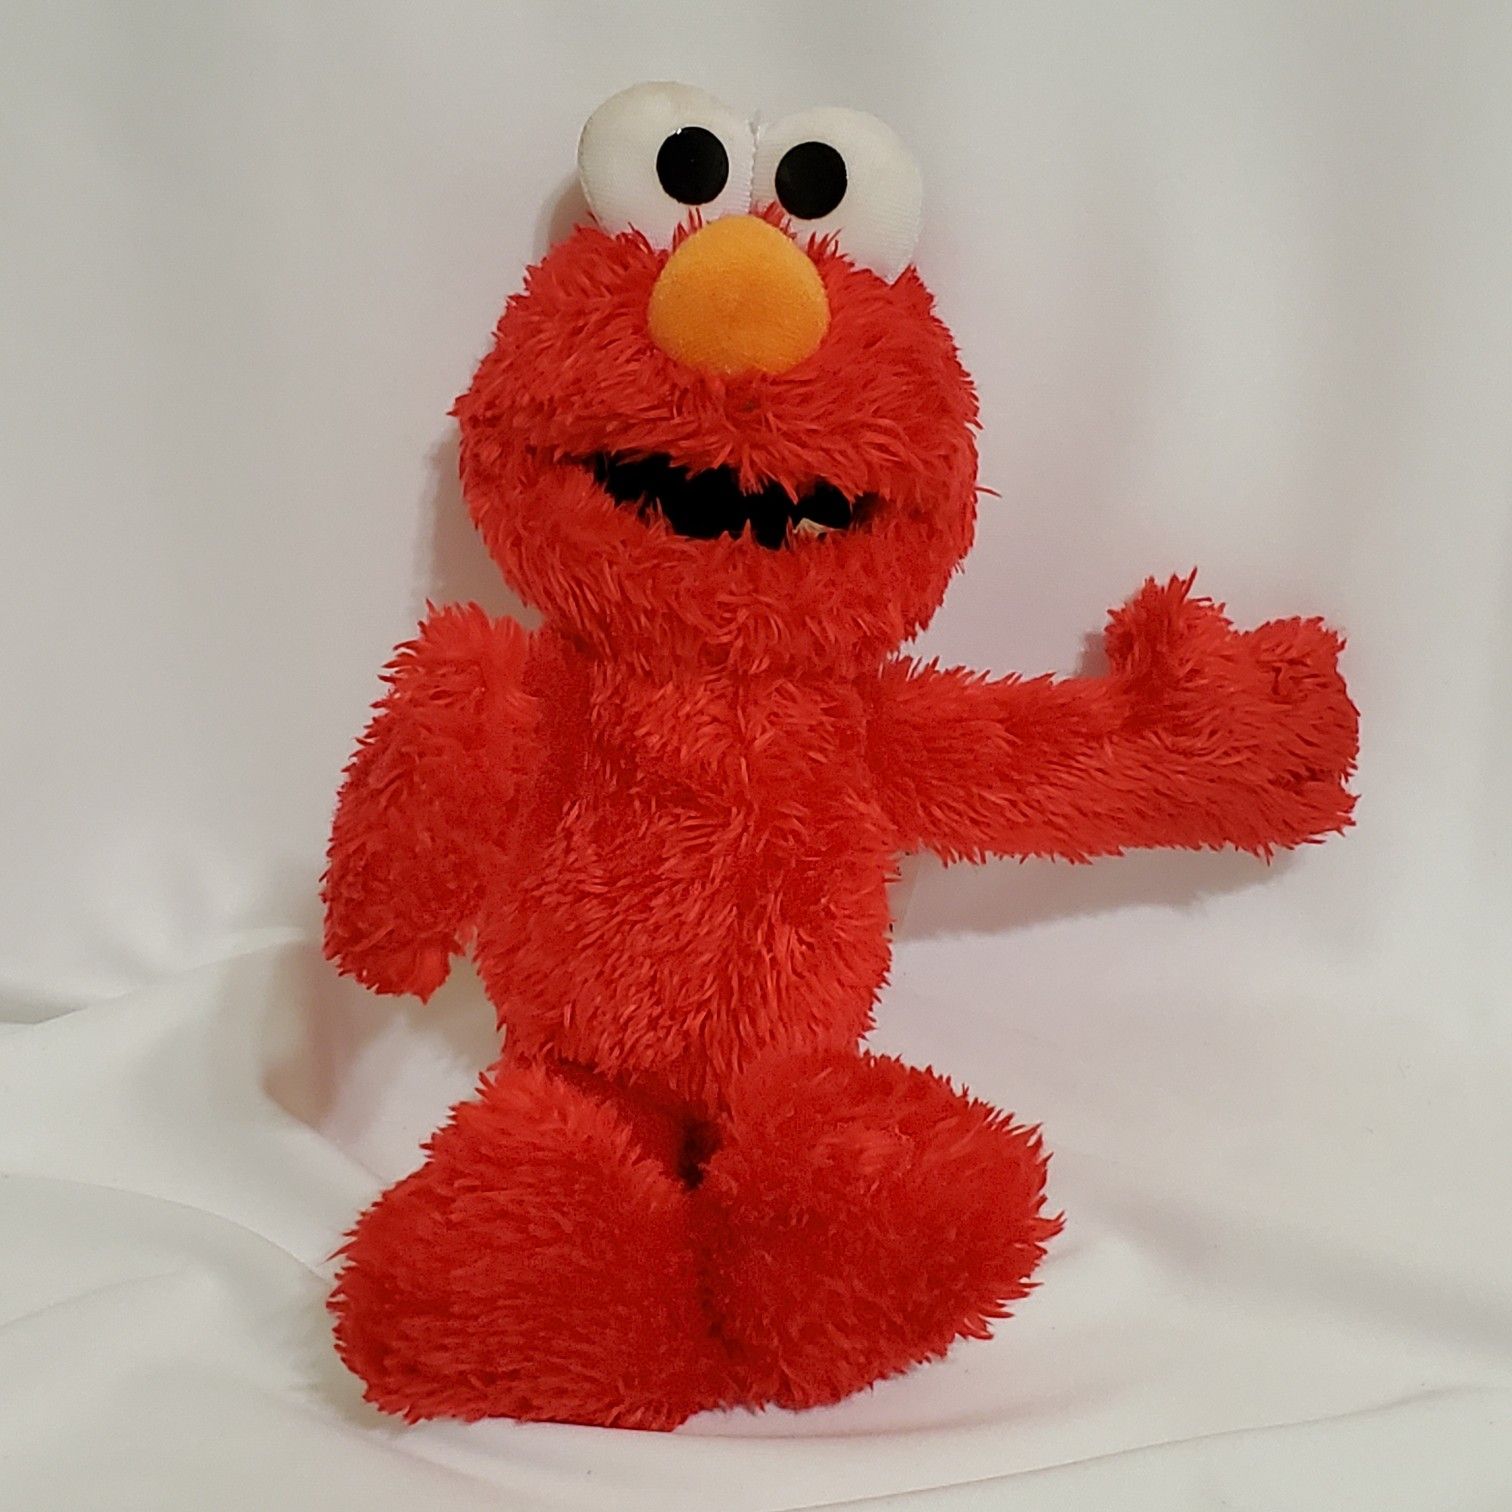 Sesame Street Soft Fuzzy Elmo 10" Approx. Plush Stuffed Animal Toy